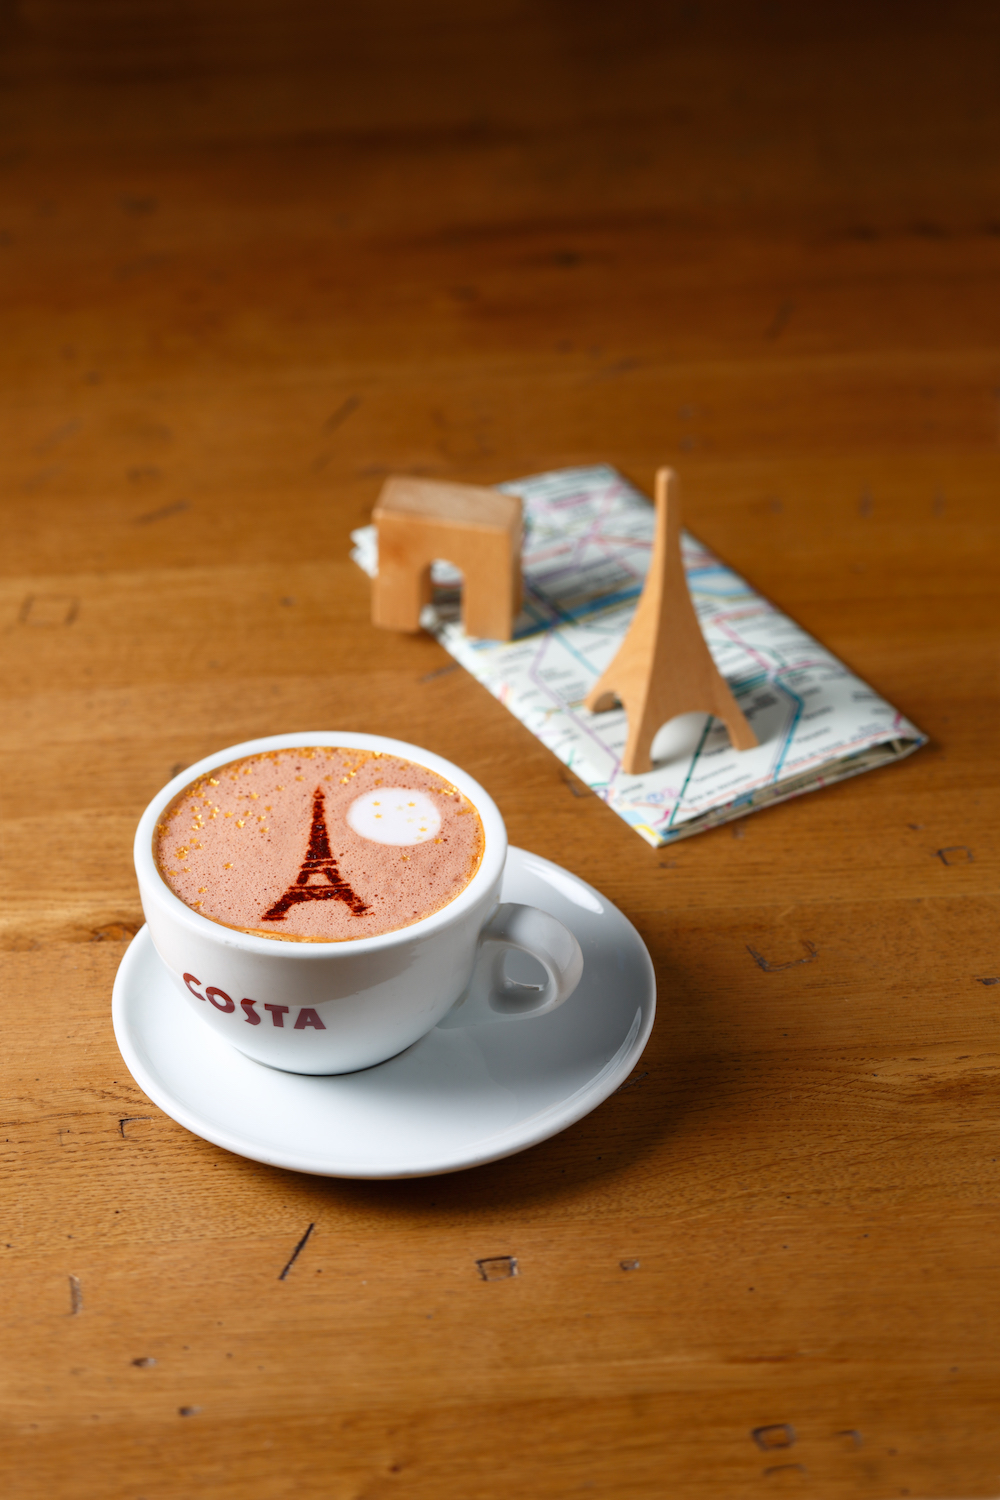 Le Mocha Paris de Costa Coffee, disponible pendant La FastandFood Week du 2 au 9 mars 2016